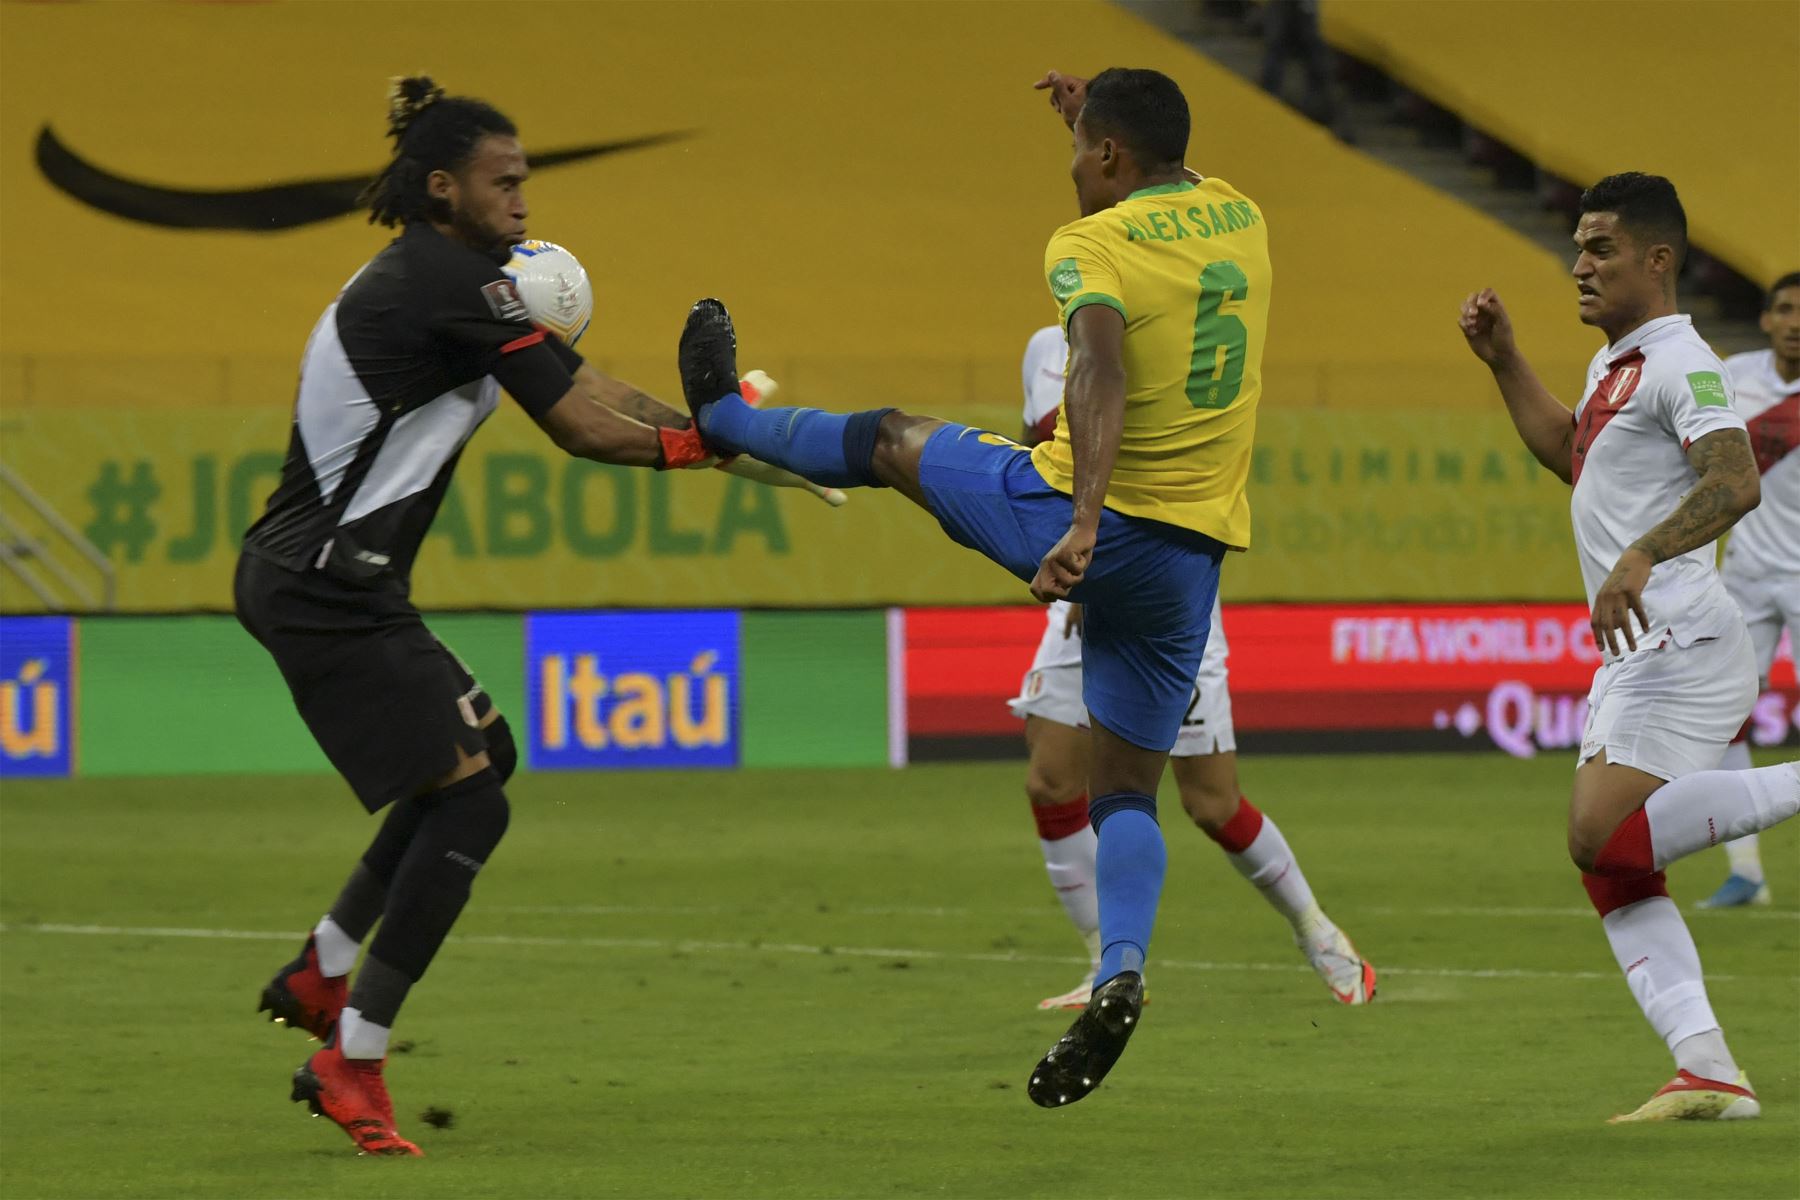 El brasileño Alex Sandro y el portero peruano Pedro Gallese compiten por el balón durante su partido de fútbol de clasificación sudamericano para la Copa Mundial de la FIFA Qatar 2022.
Foto: AFP